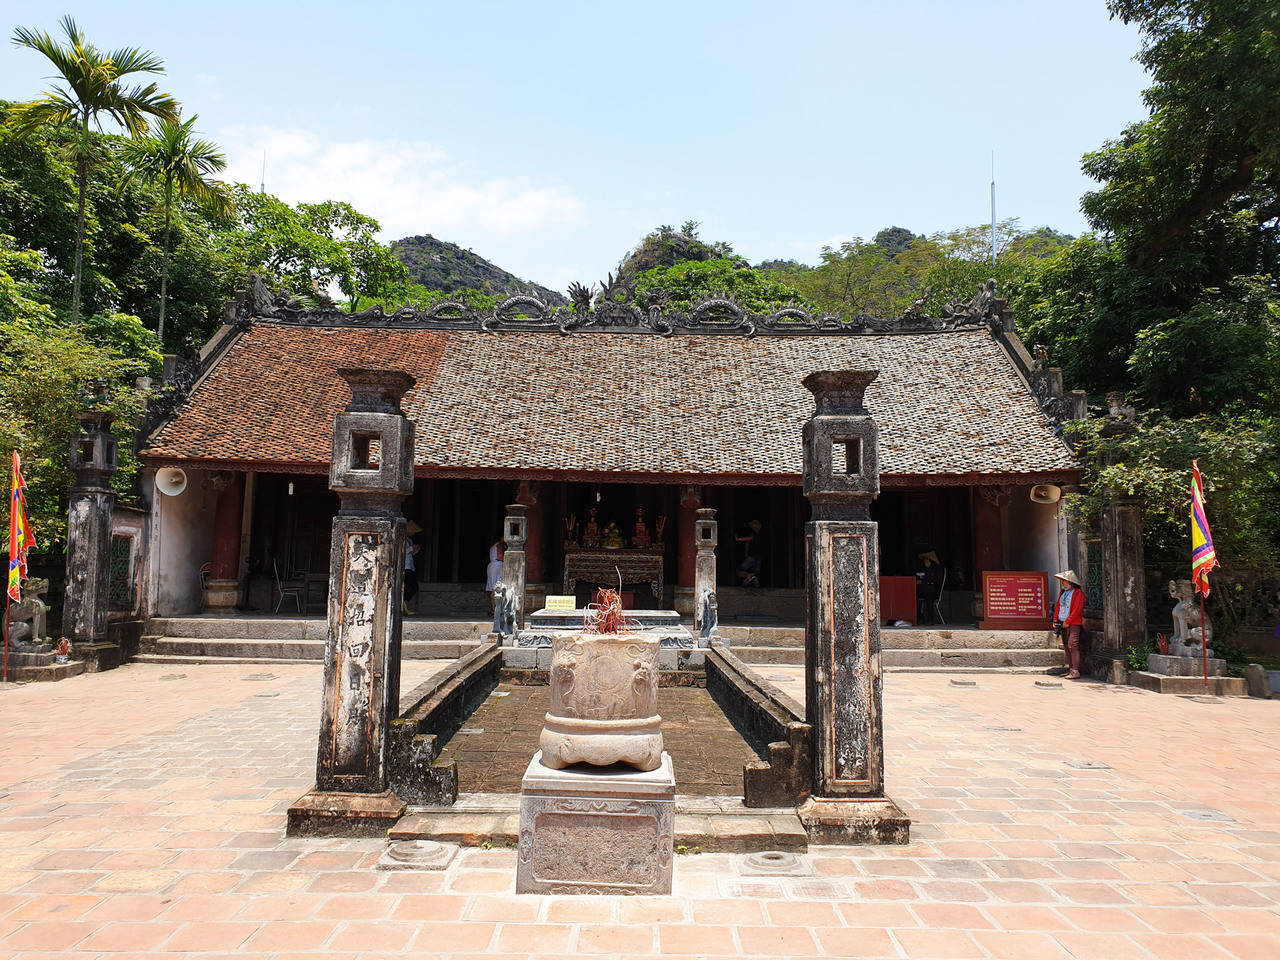 Đền thờ Vua Đinh Tiên Hoàng là ngôi đền cổ, có giá trị lịch sử vô cùng to lớn đối với dân tộc ta